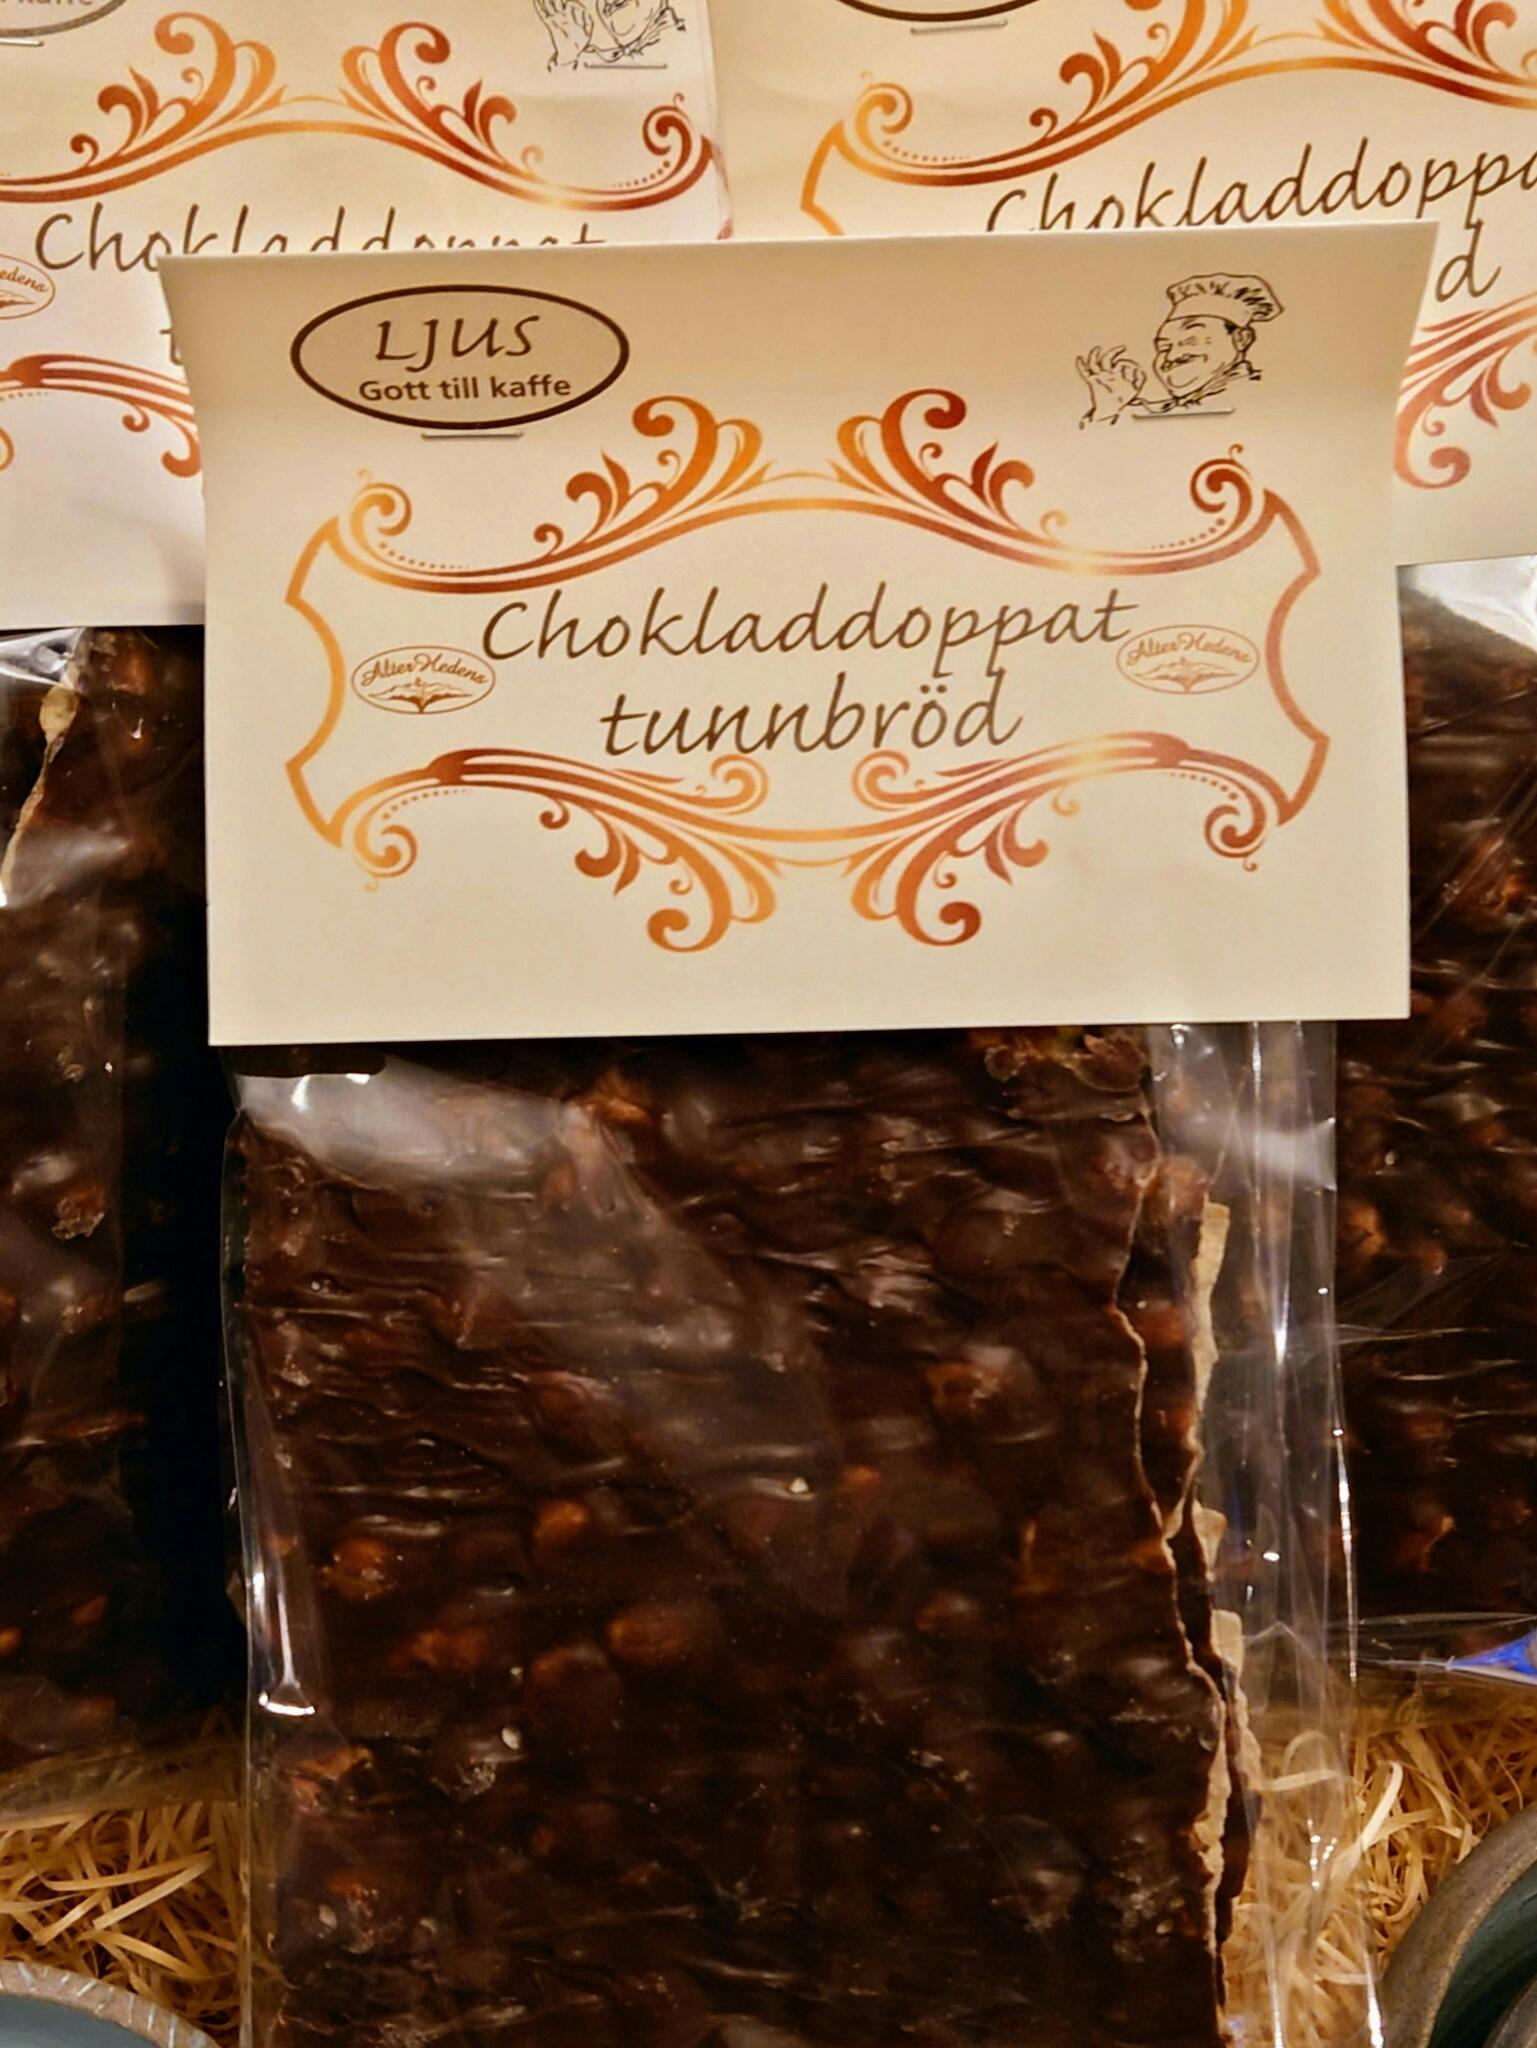 Chokladdoppat tunnbröd